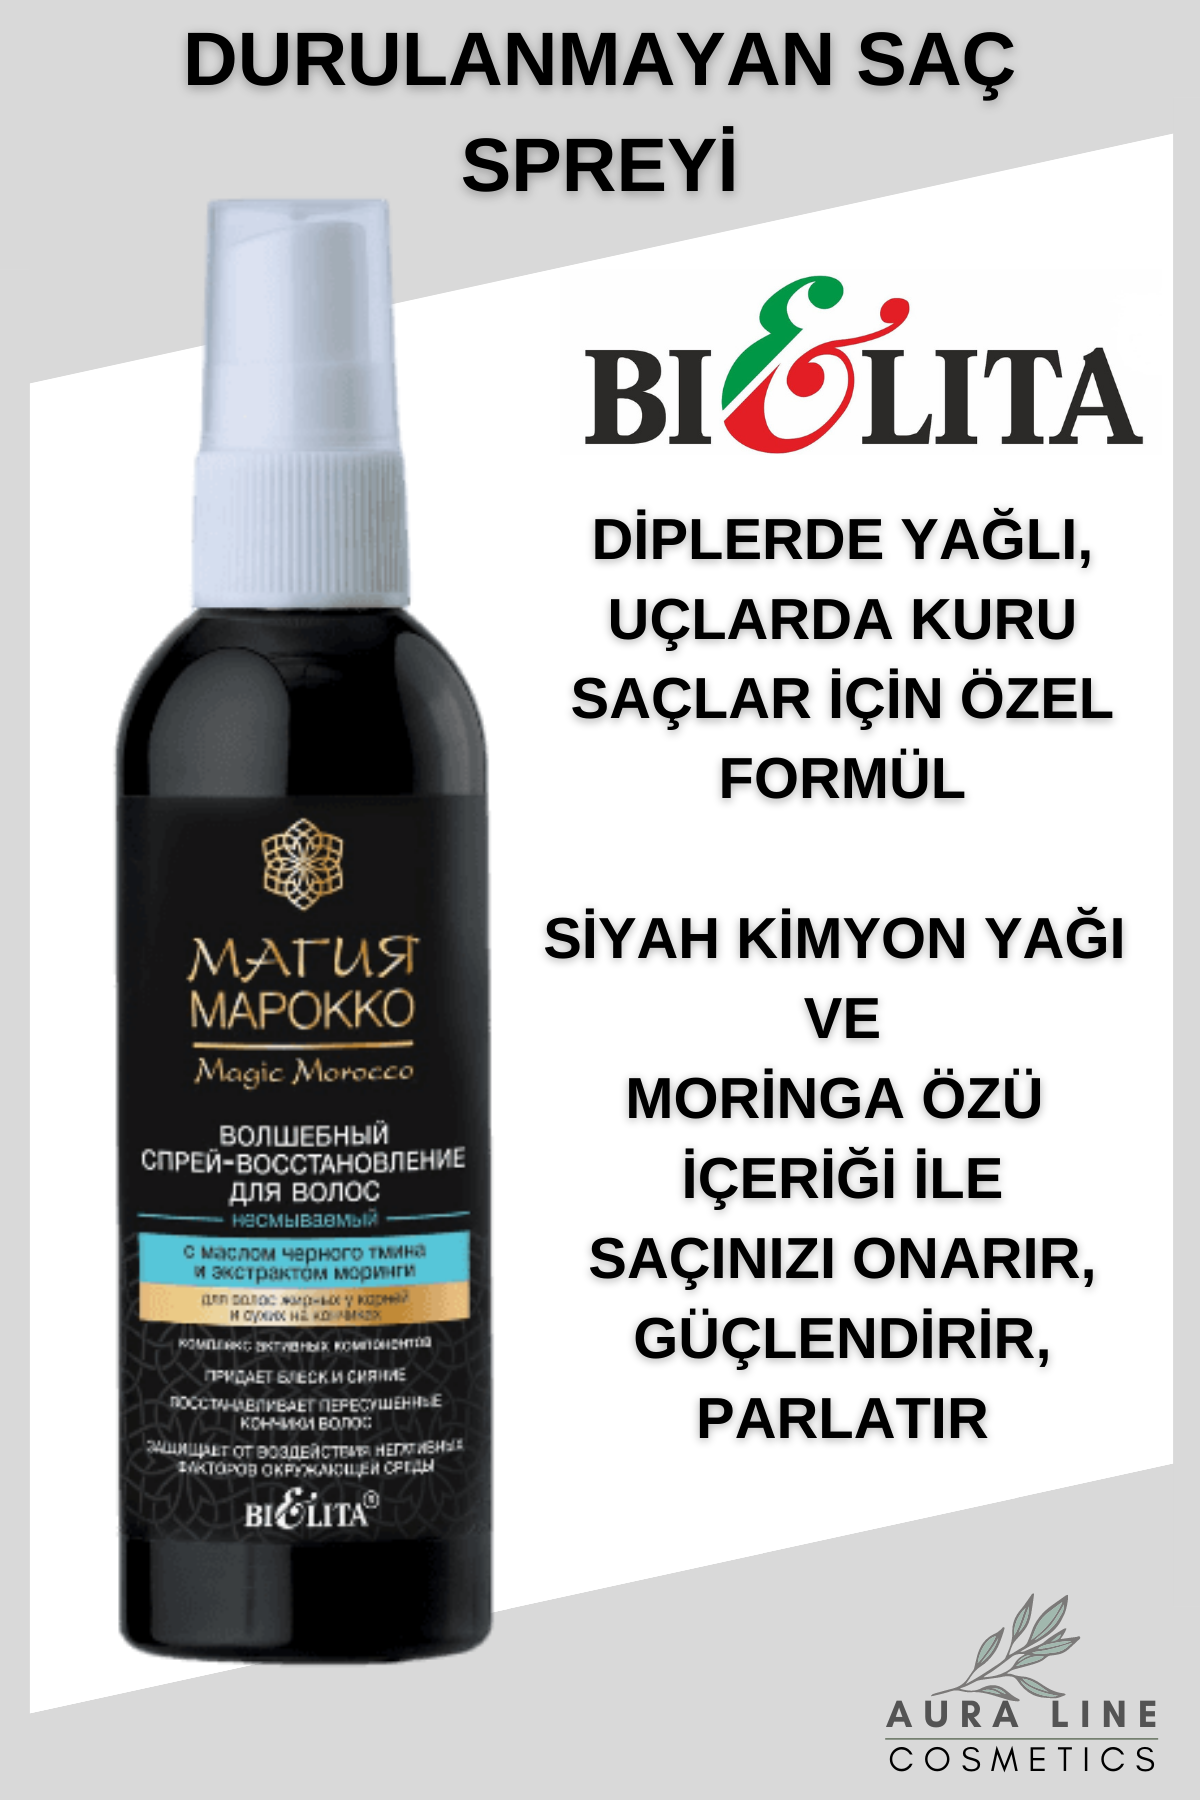 Magic Marocco Siyah Kimyon Yağı Ve Moringa Özü İçeren Durulanmayan Saç Spreyi | Auraline Cosmetics